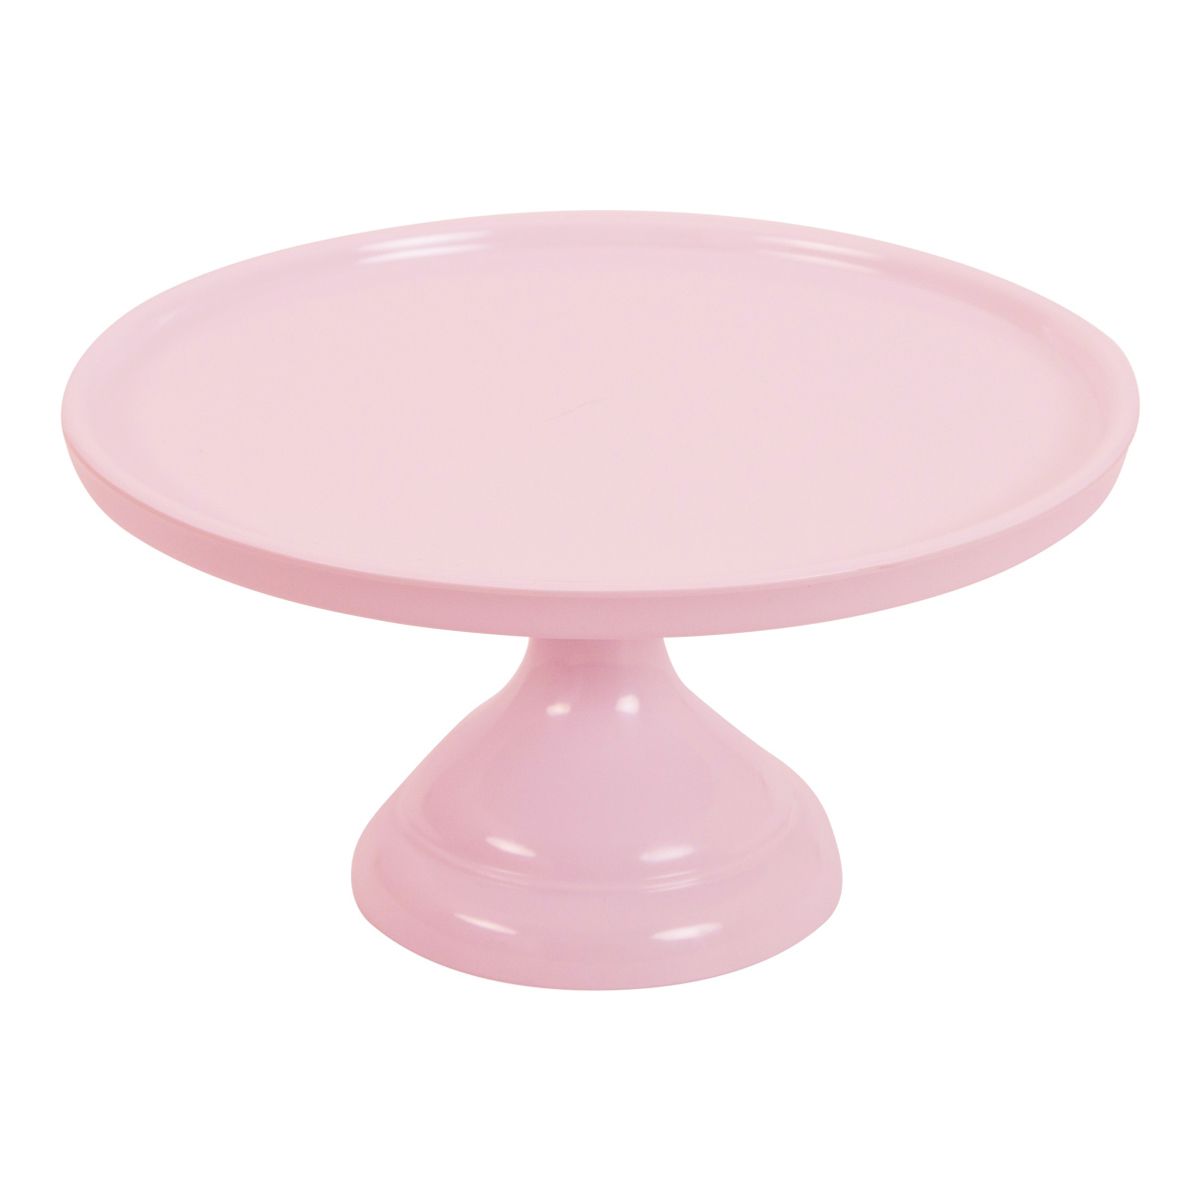 Imagen de producto: Stand rosa de melamina 23,5 cm